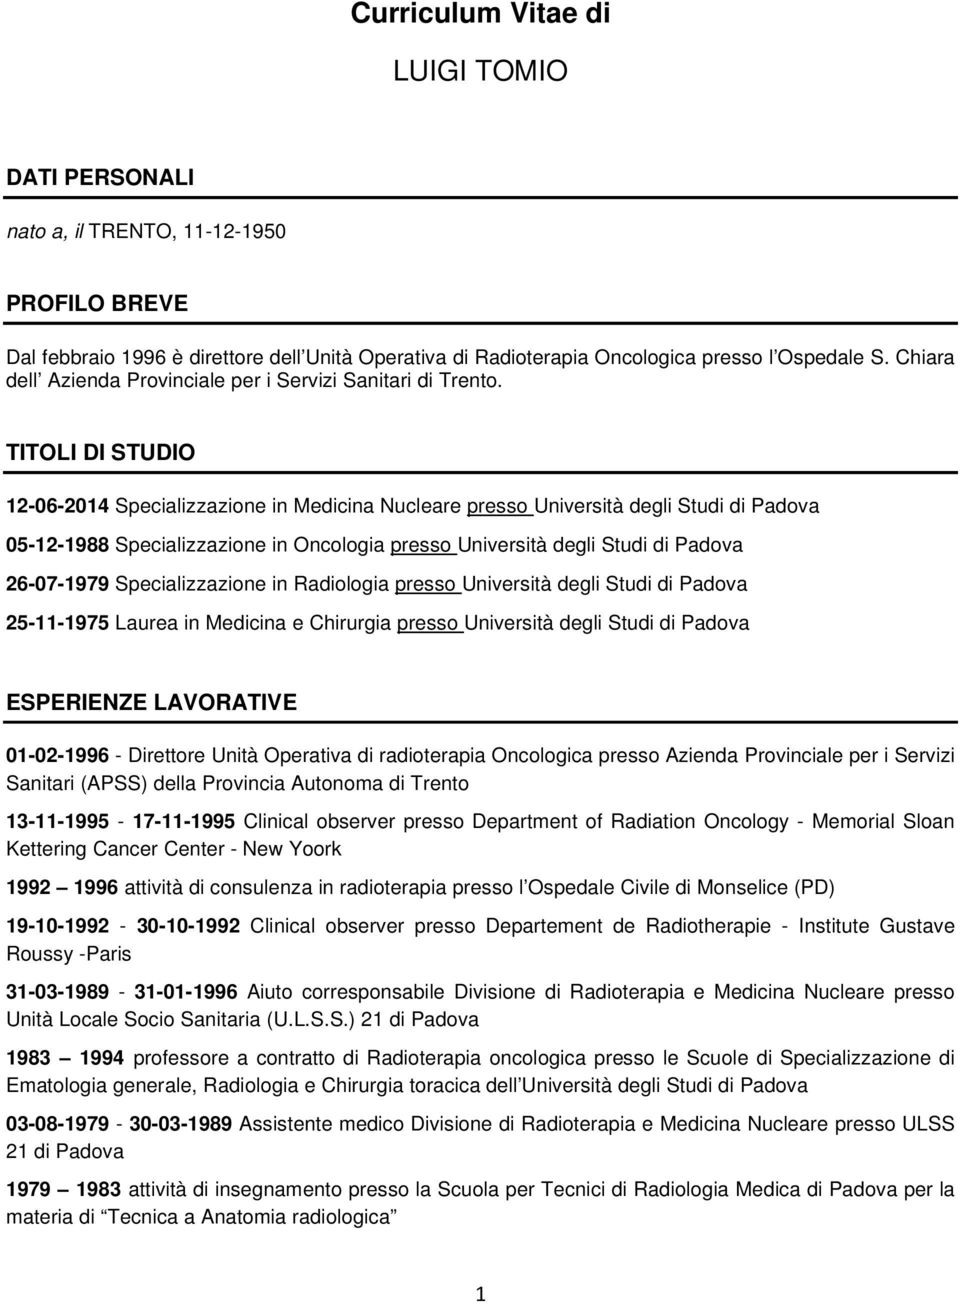 TITOLI DI STUDIO 12-06-2014 Specializzazione in Medicina Nucleare presso Università degli Studi di Padova 05-12-1988 Specializzazione in Oncologia presso Università degli Studi di Padova 26-07-1979